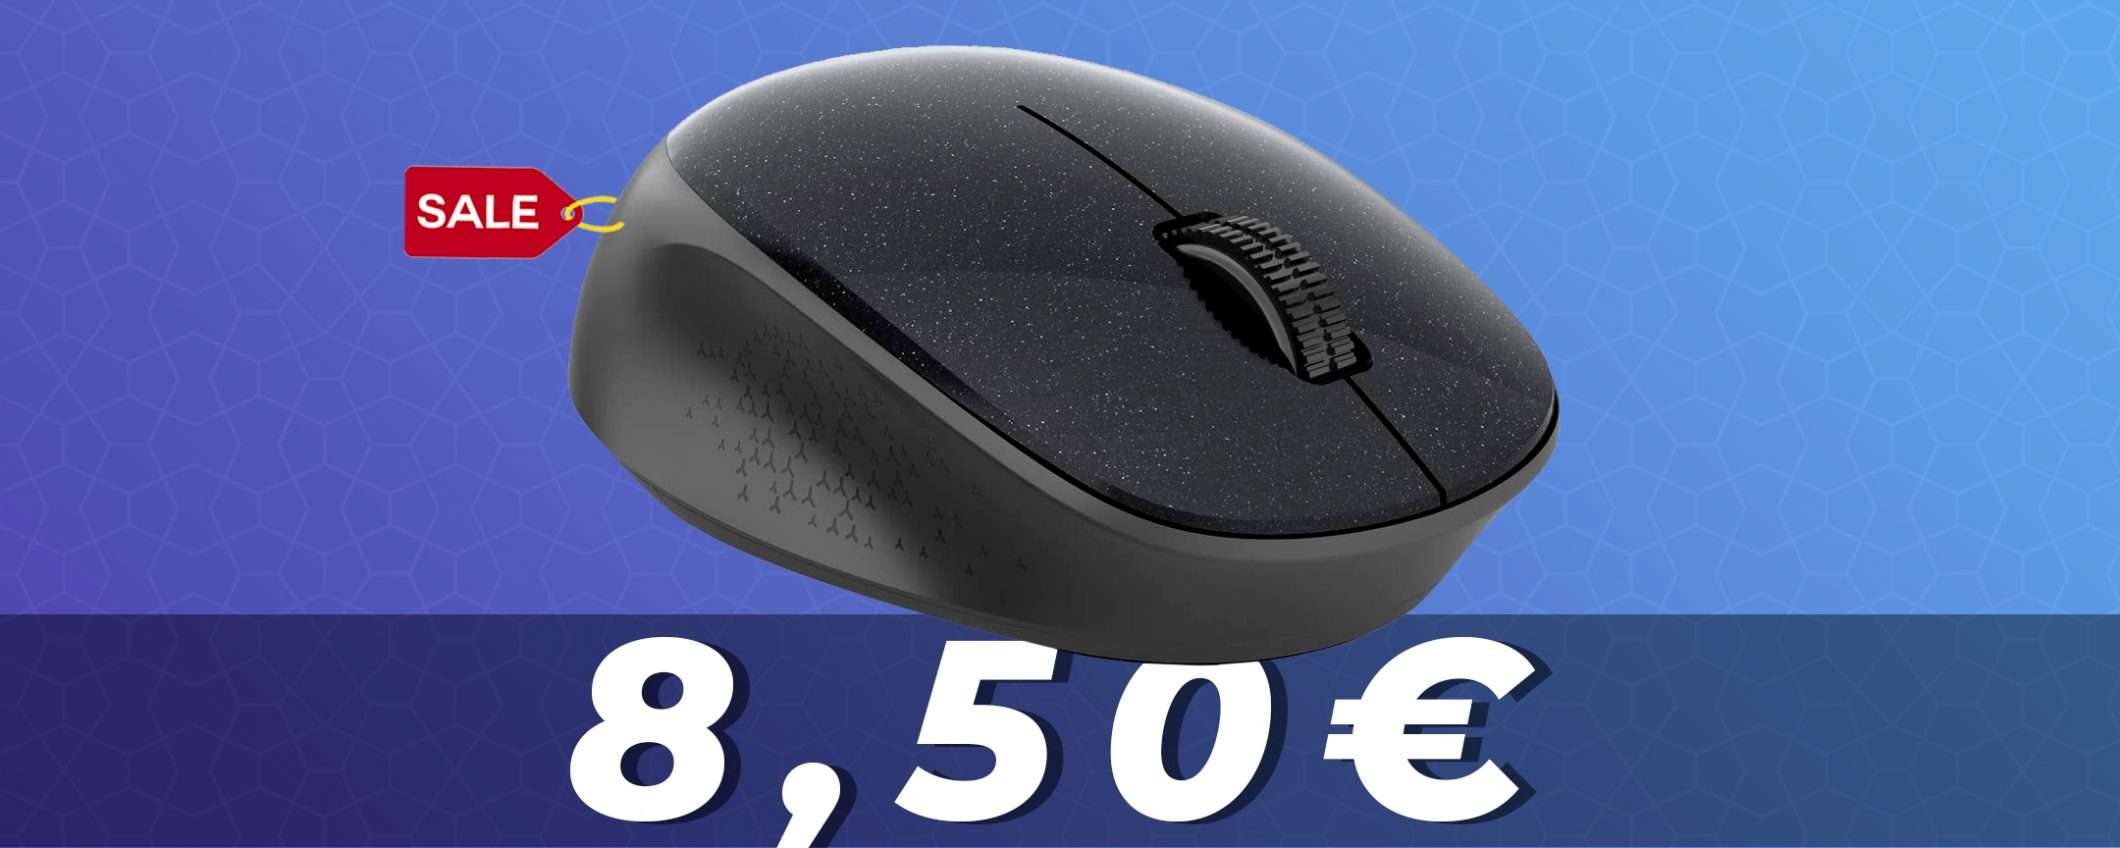 Mouse Wireless silenzioso in offerta su Amazon a soli 8 euro